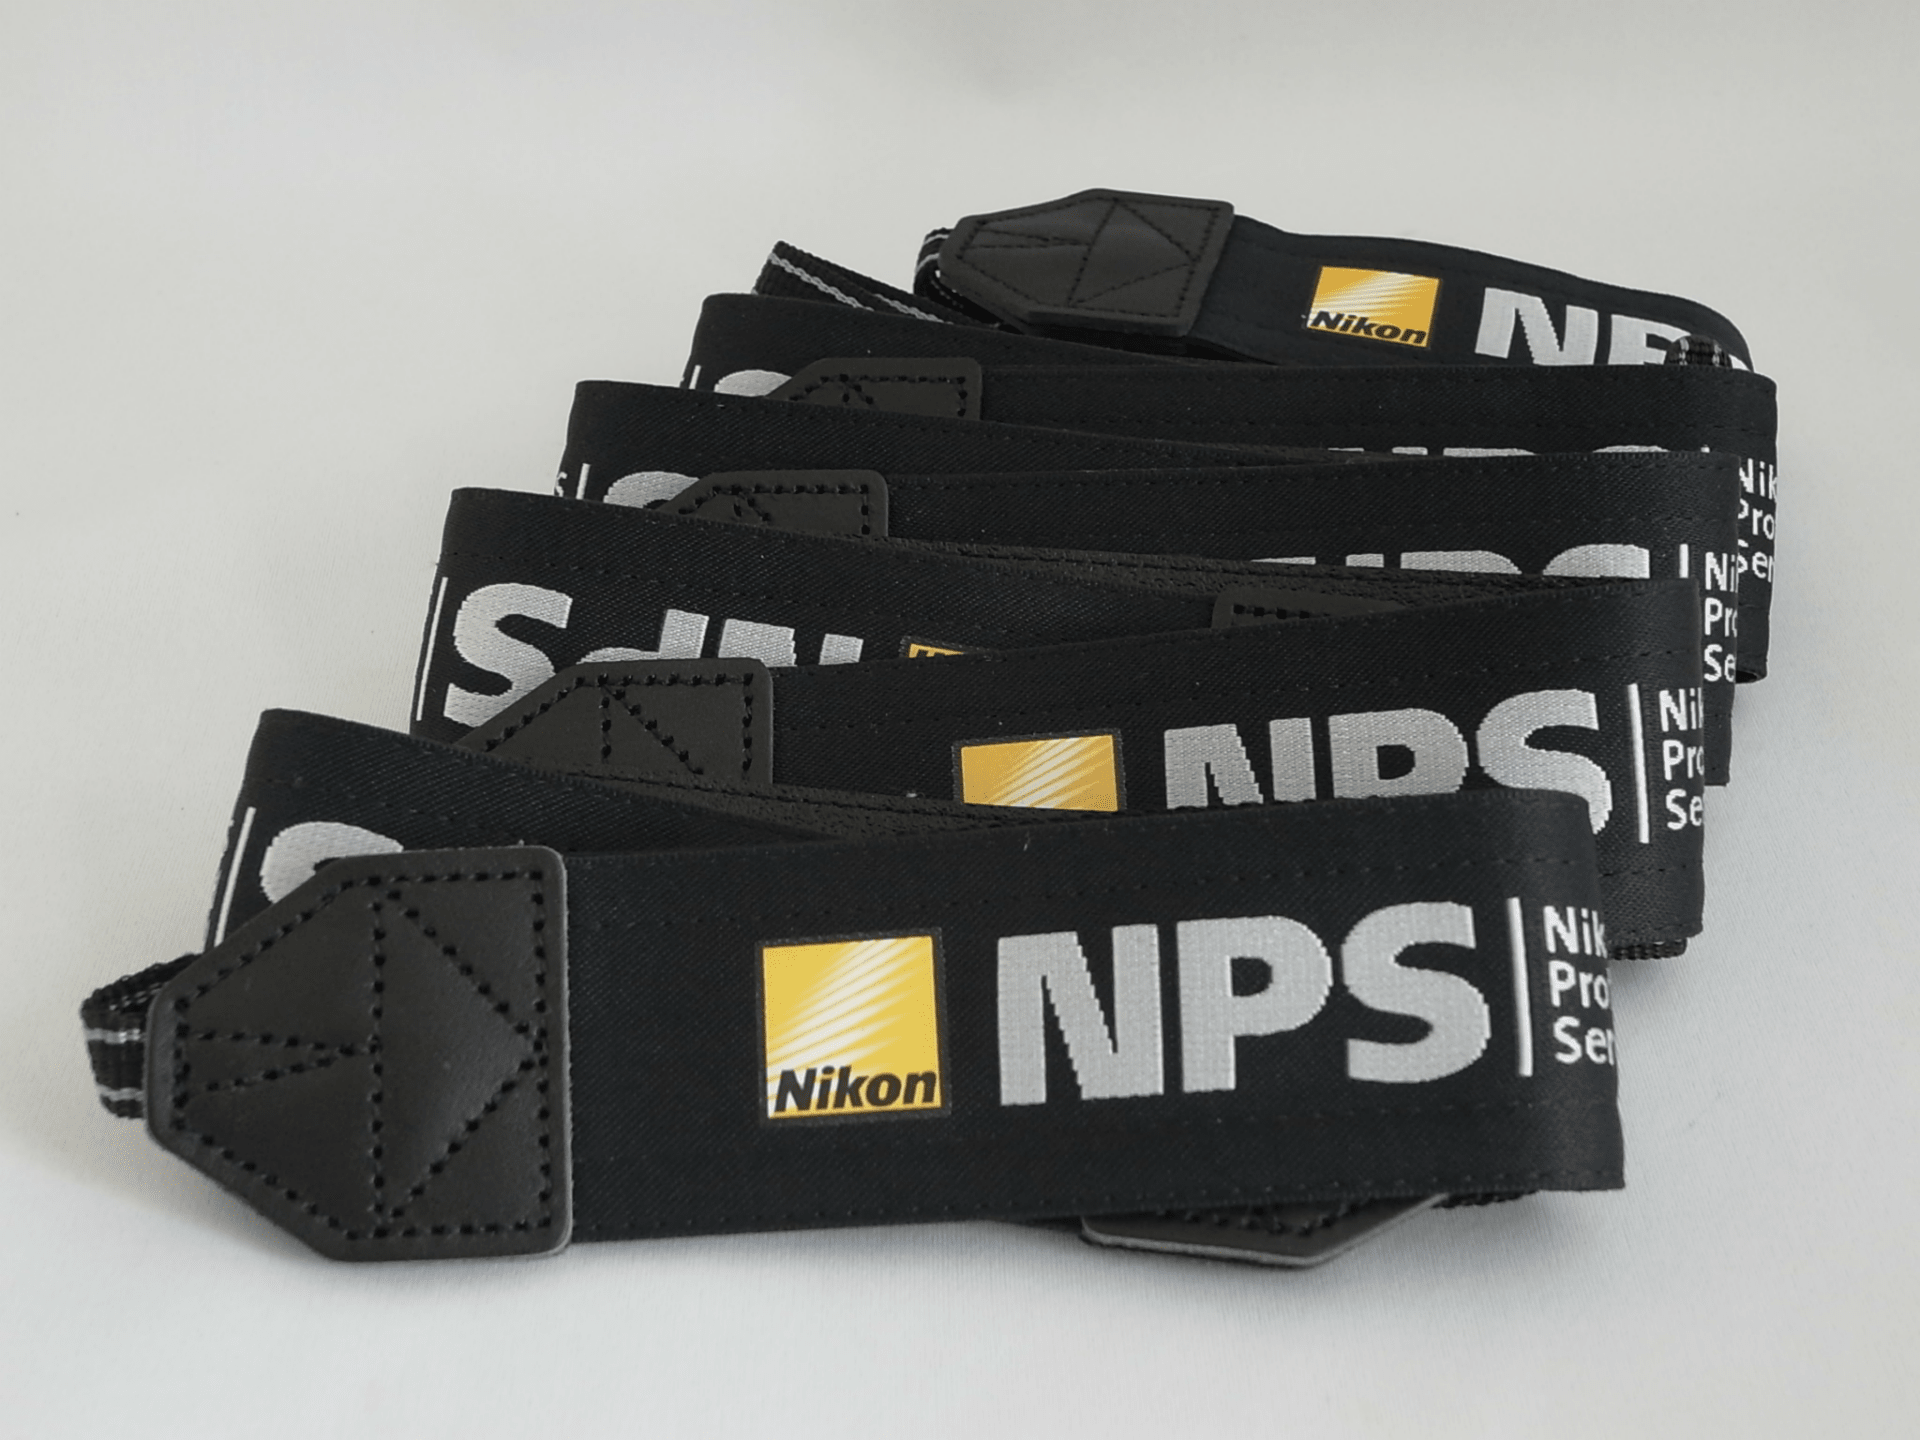 Nikon NPS ストラップ入荷いたしました。 - 続 hatocame-garage